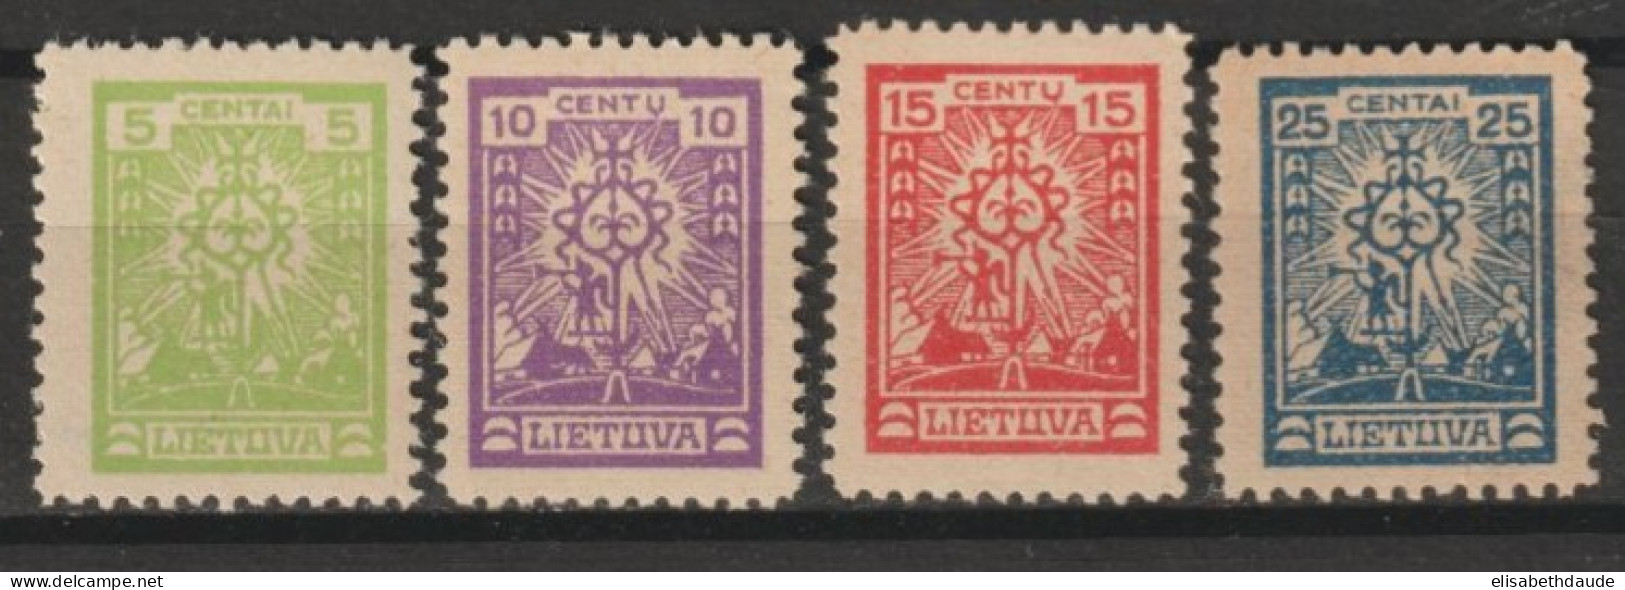 1923 - LITUANIE - SERIE COMPLETE  N°185/187 * MLH SANS FILIGRANE - COTE = 30 EUR. - Lituania